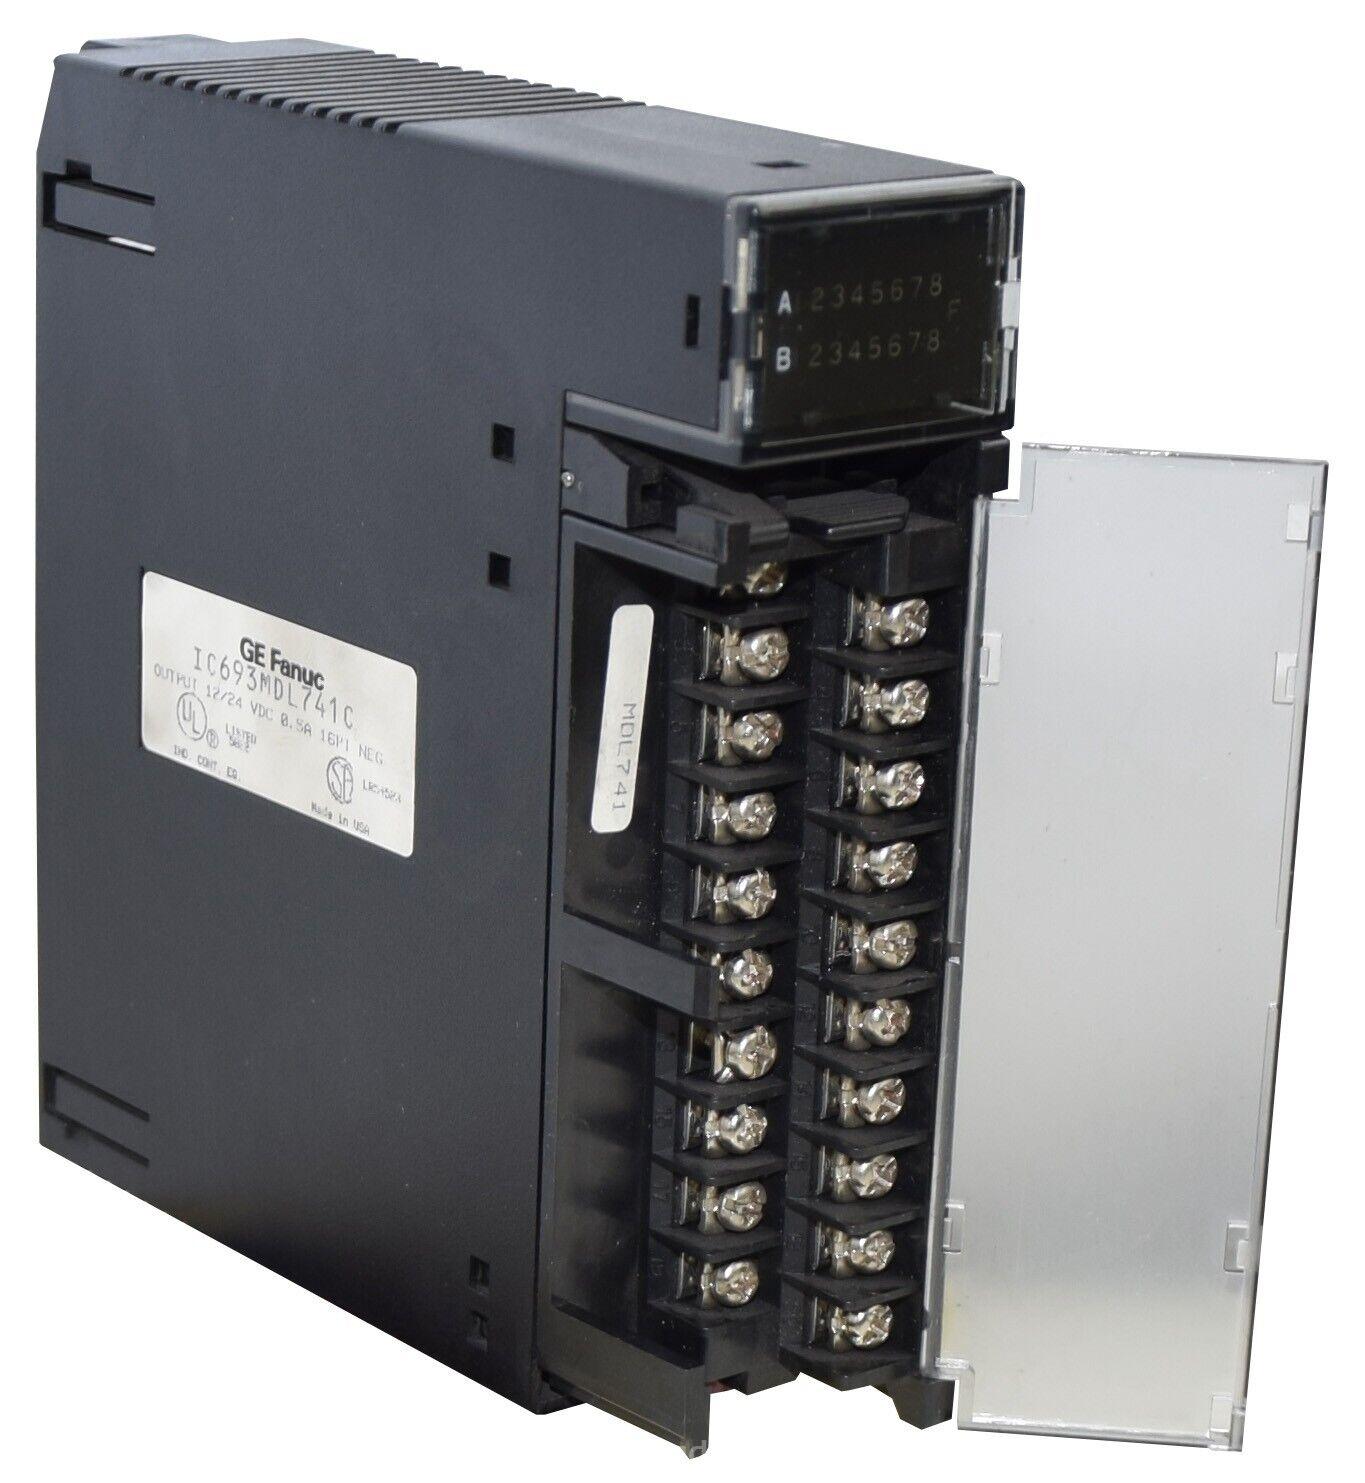 (IC693MDL741 模块) 品牌 通用电气 GE 原装进口 正品全新 库存现货可供